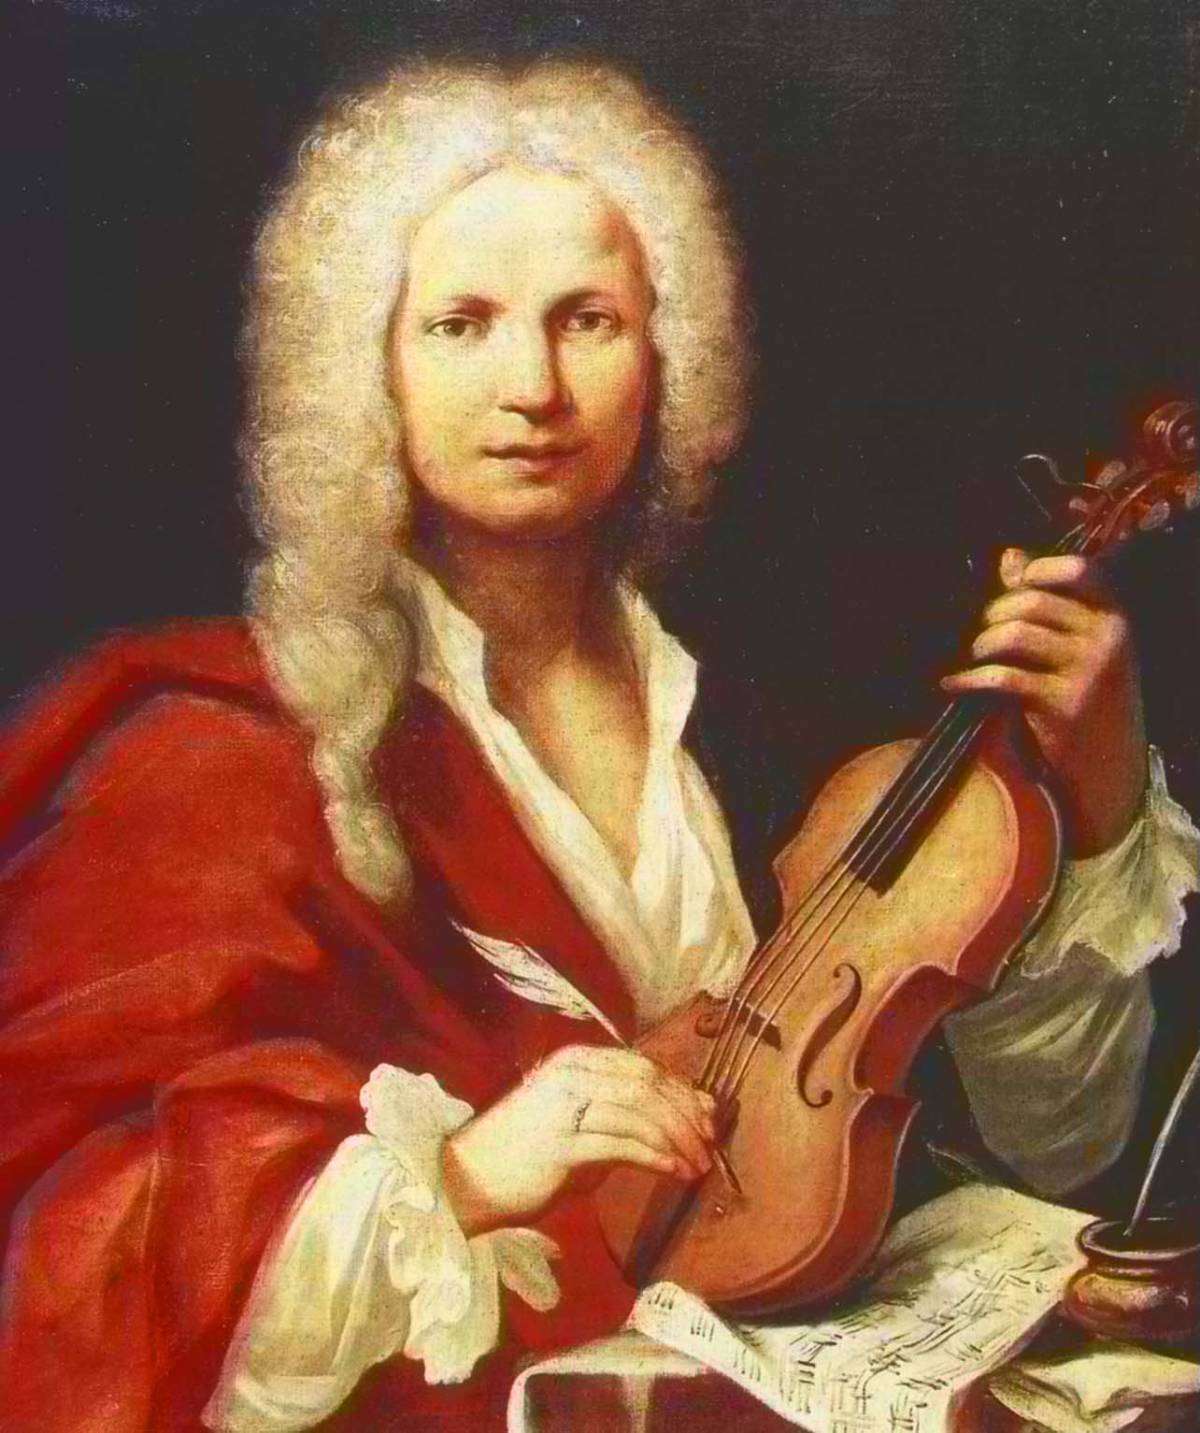 Le vite parallele di Vivaldi e di Lucietta, "putta" e organista